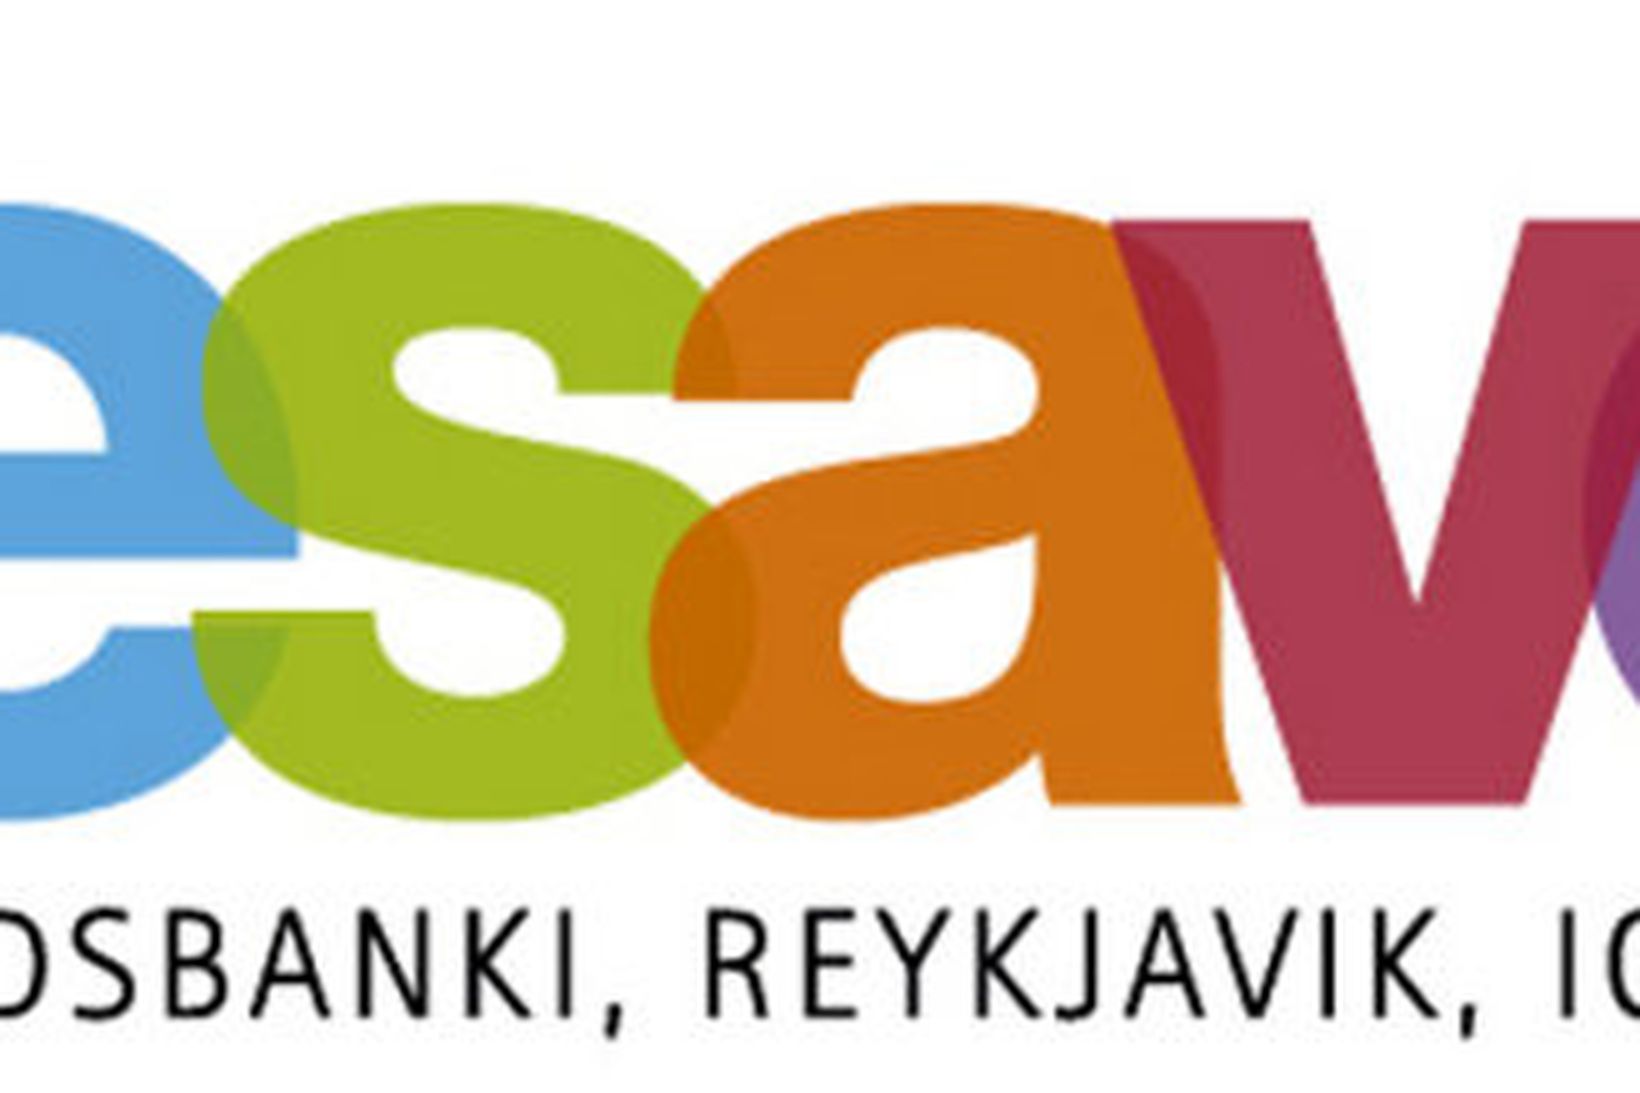 Icesave logo landsbankans